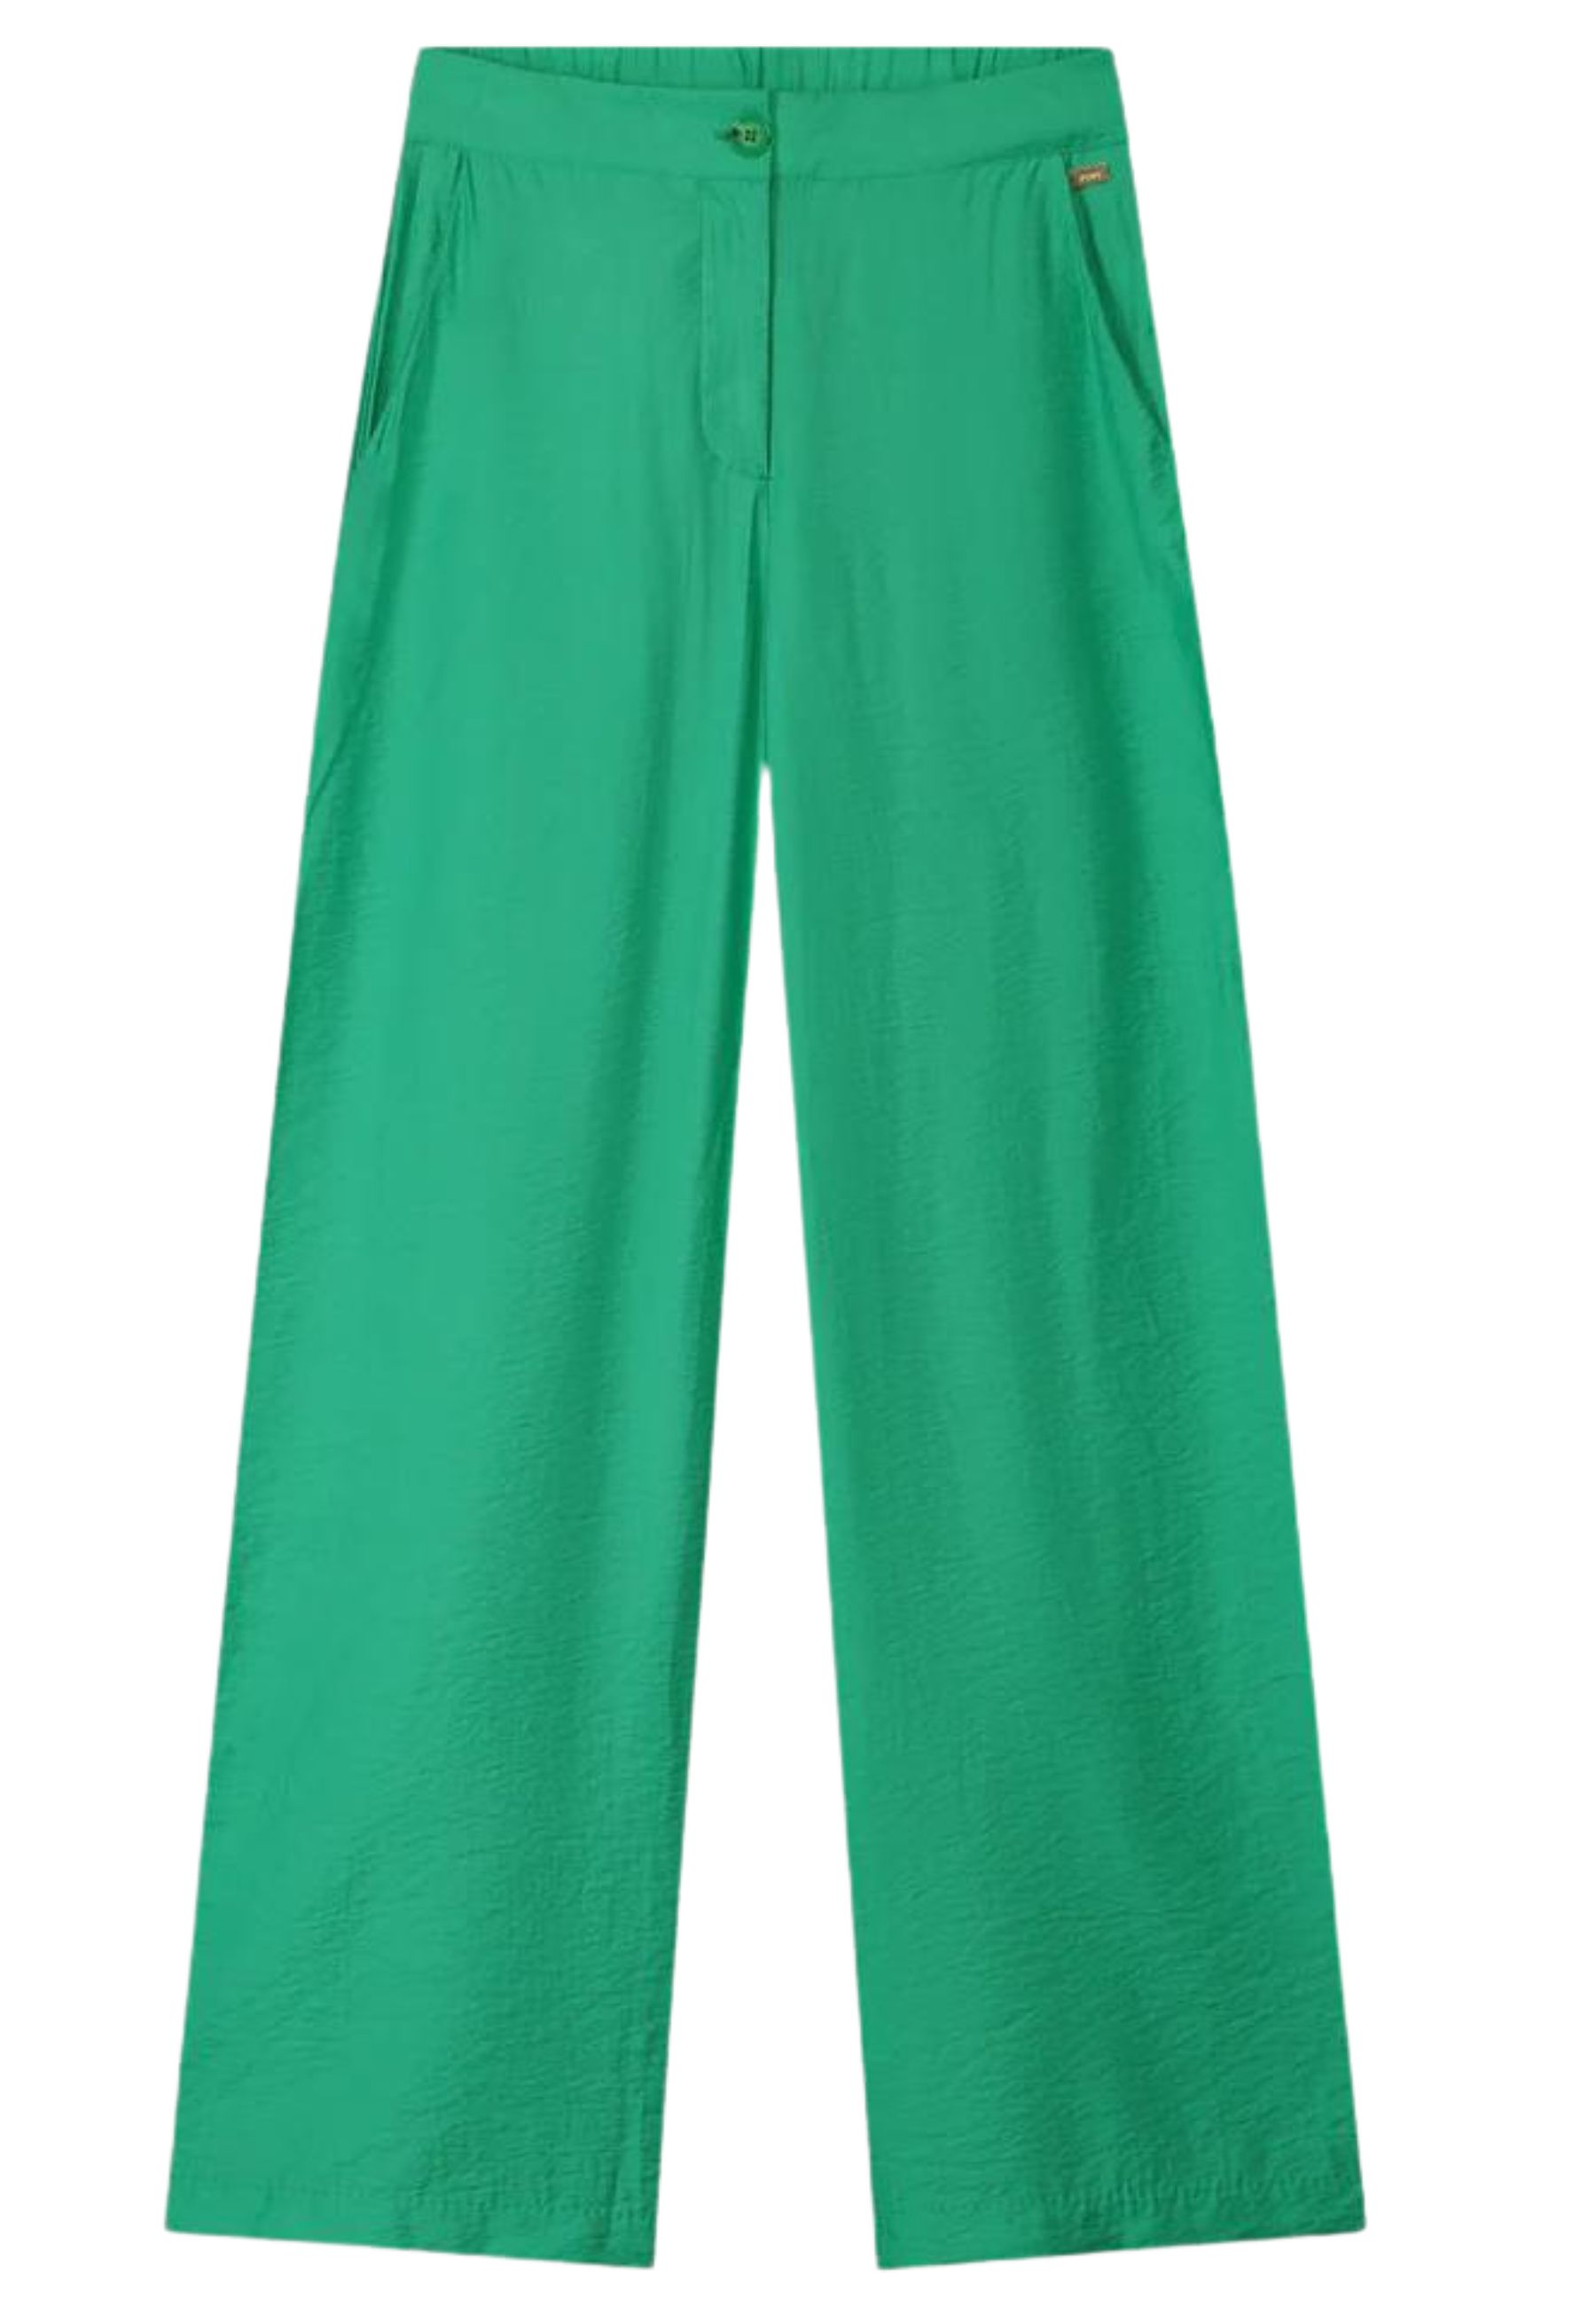 Broek Groen pantalons groen